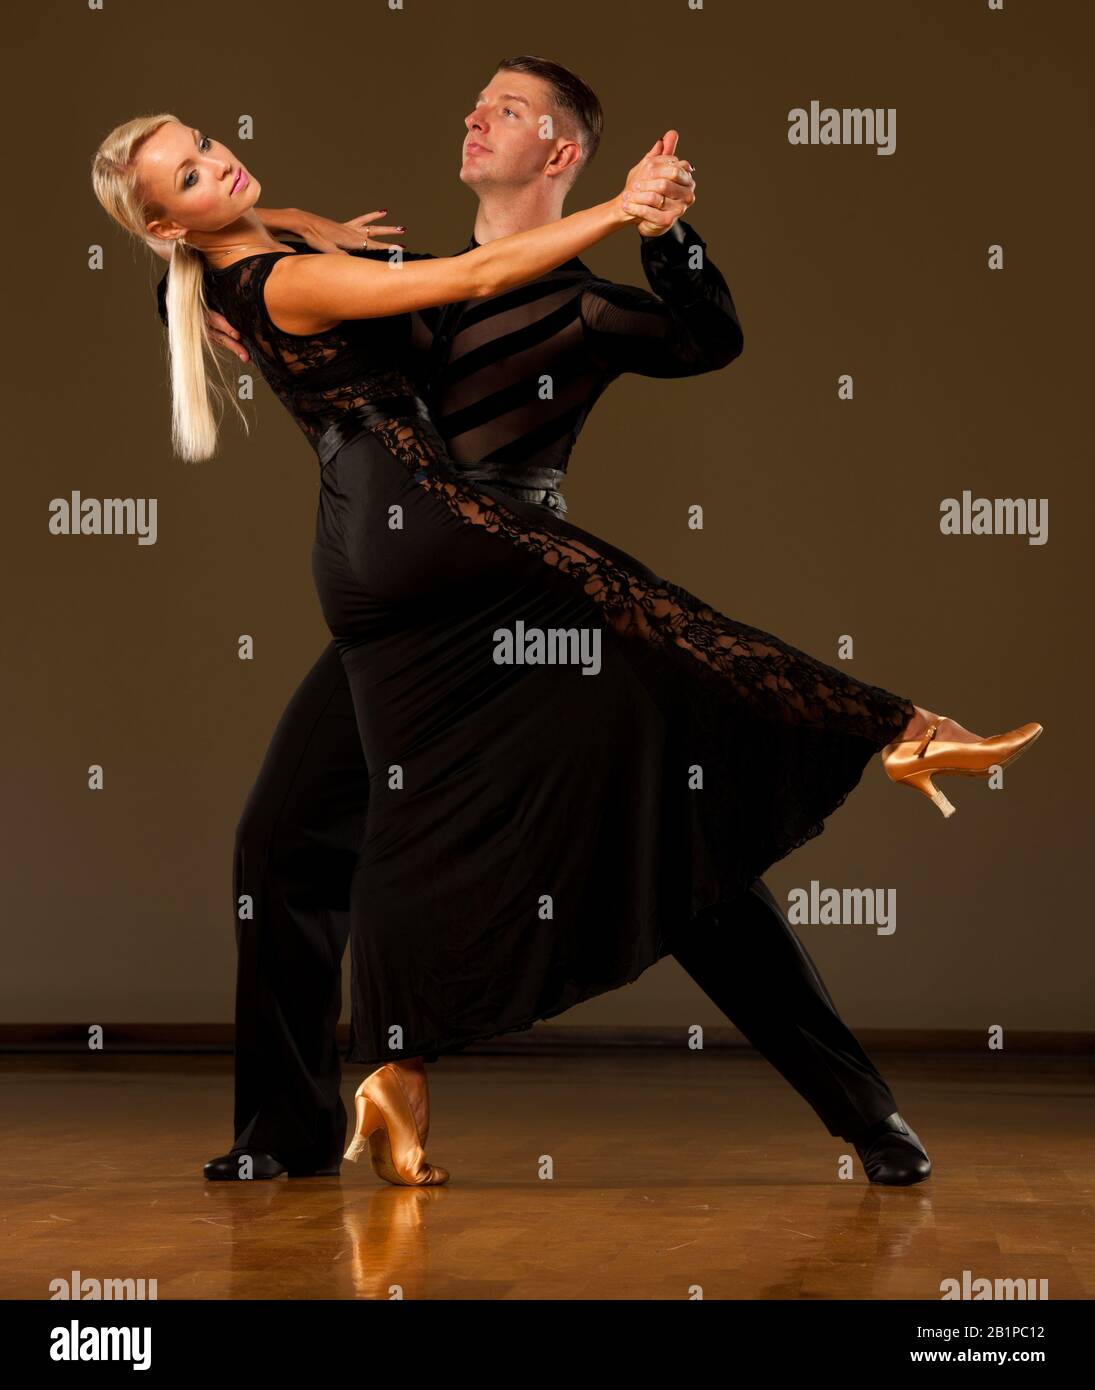 Un beau couple de salle de bal fait la danse de son exposition Banque D'Images